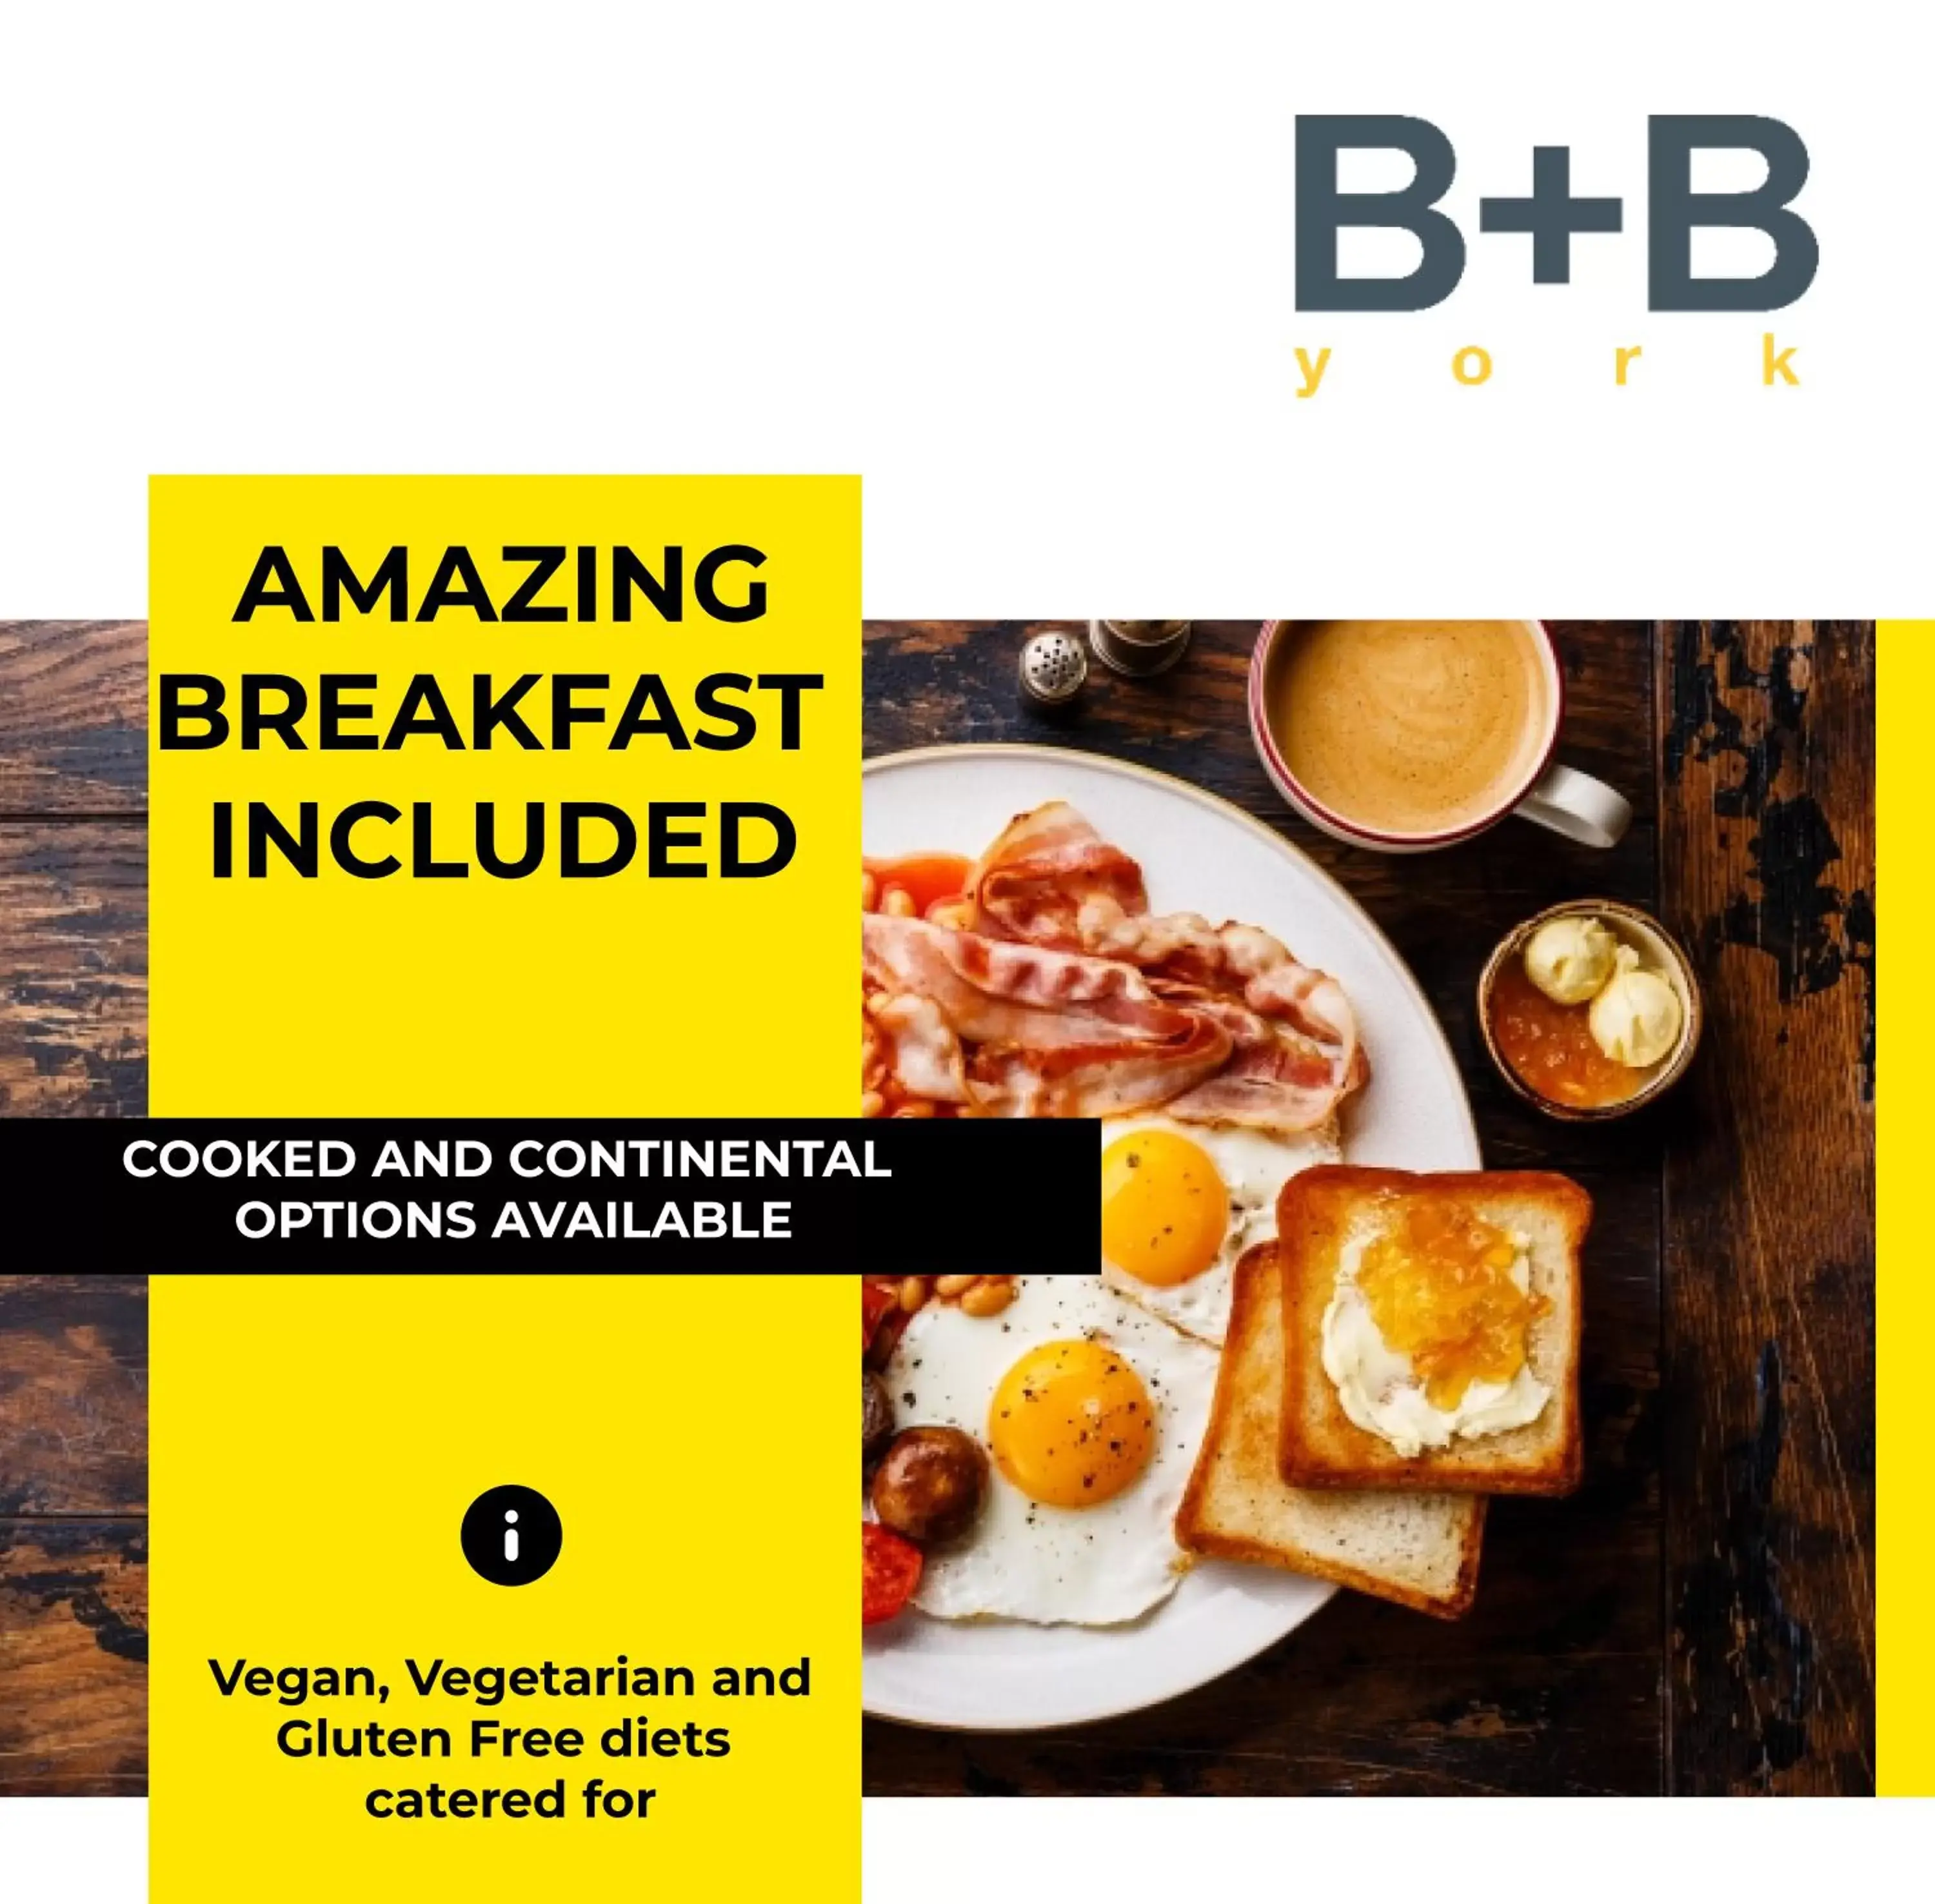 Breakfast in B+B York